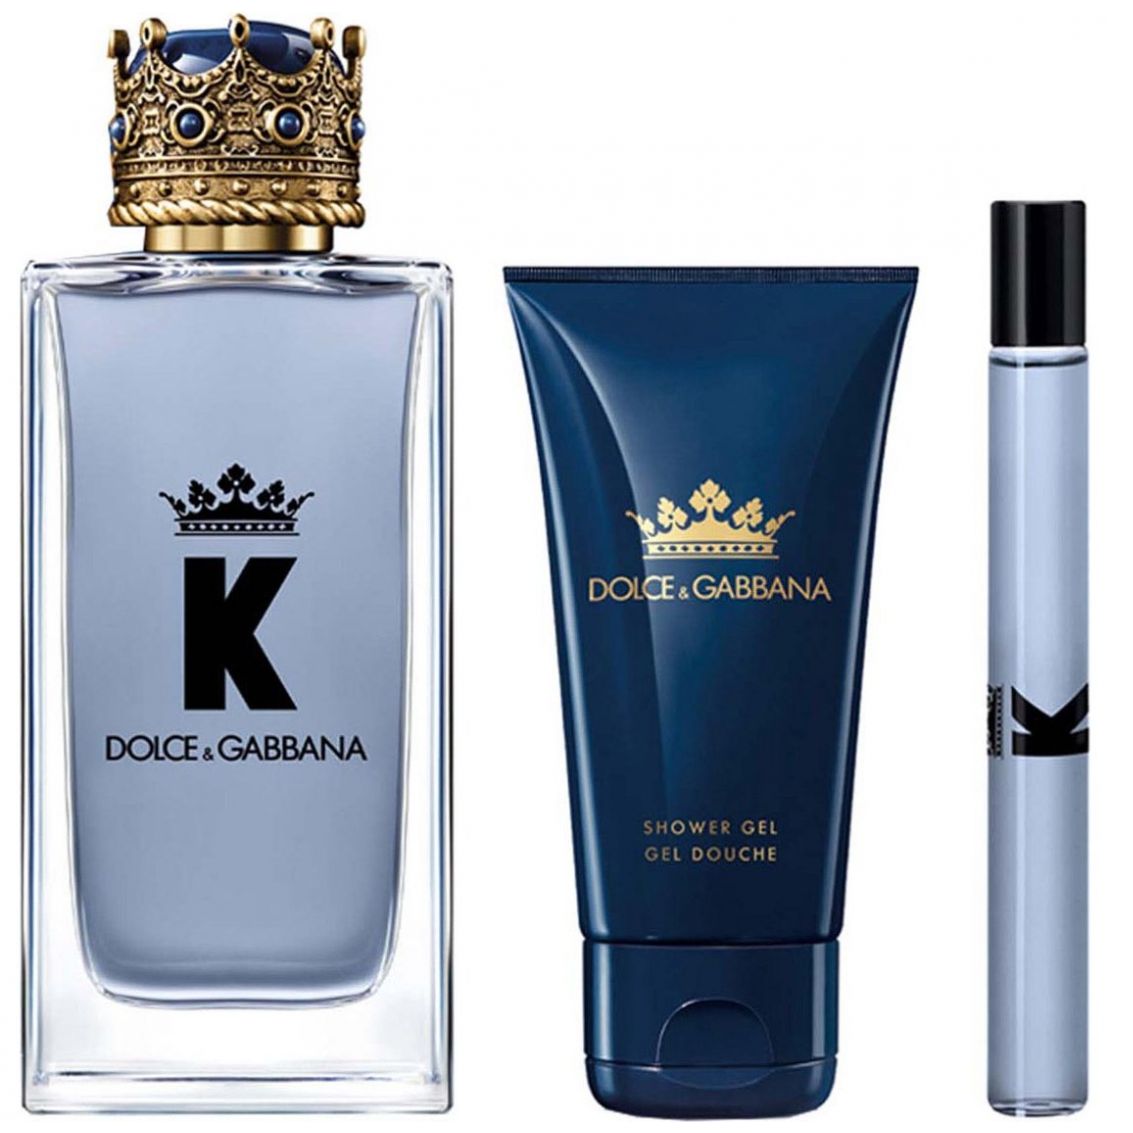 Estuche para Caballero Dolce&Gabbana K By Dolce&Gabbana Edt 100 Ml